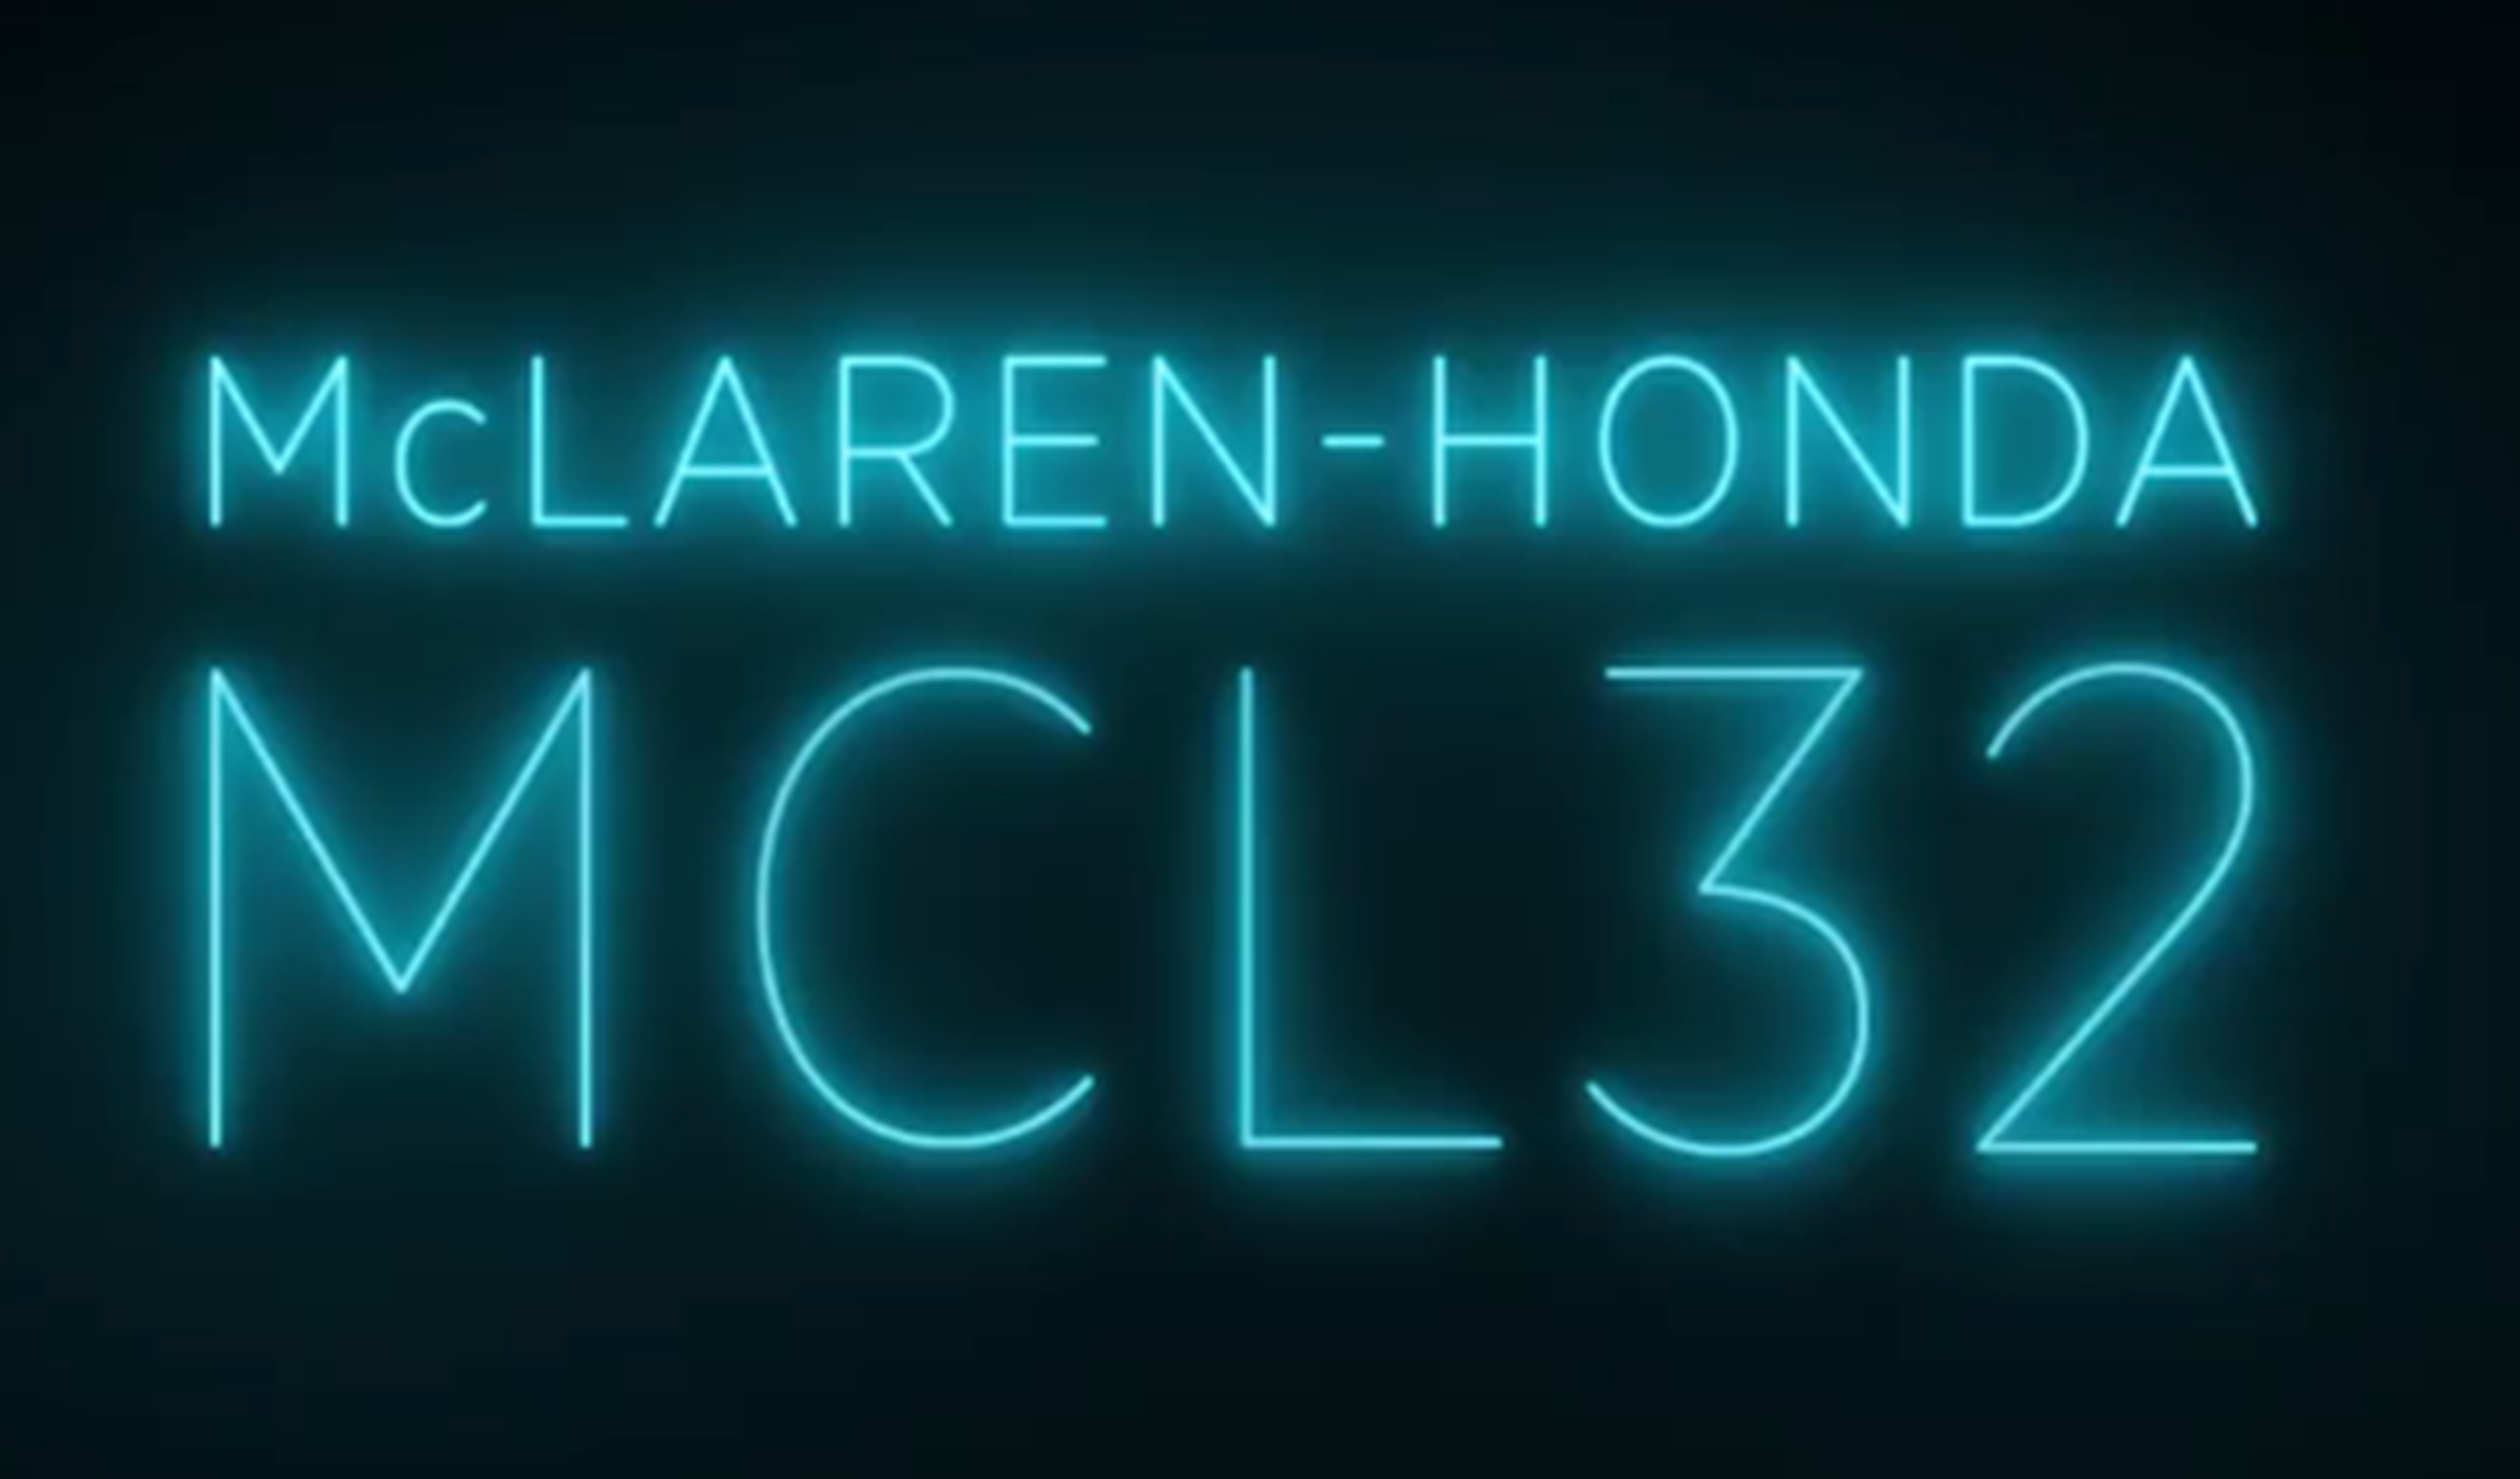 McLaren-Honda MCL32, así se llamará el nuevo F1 de Alonso